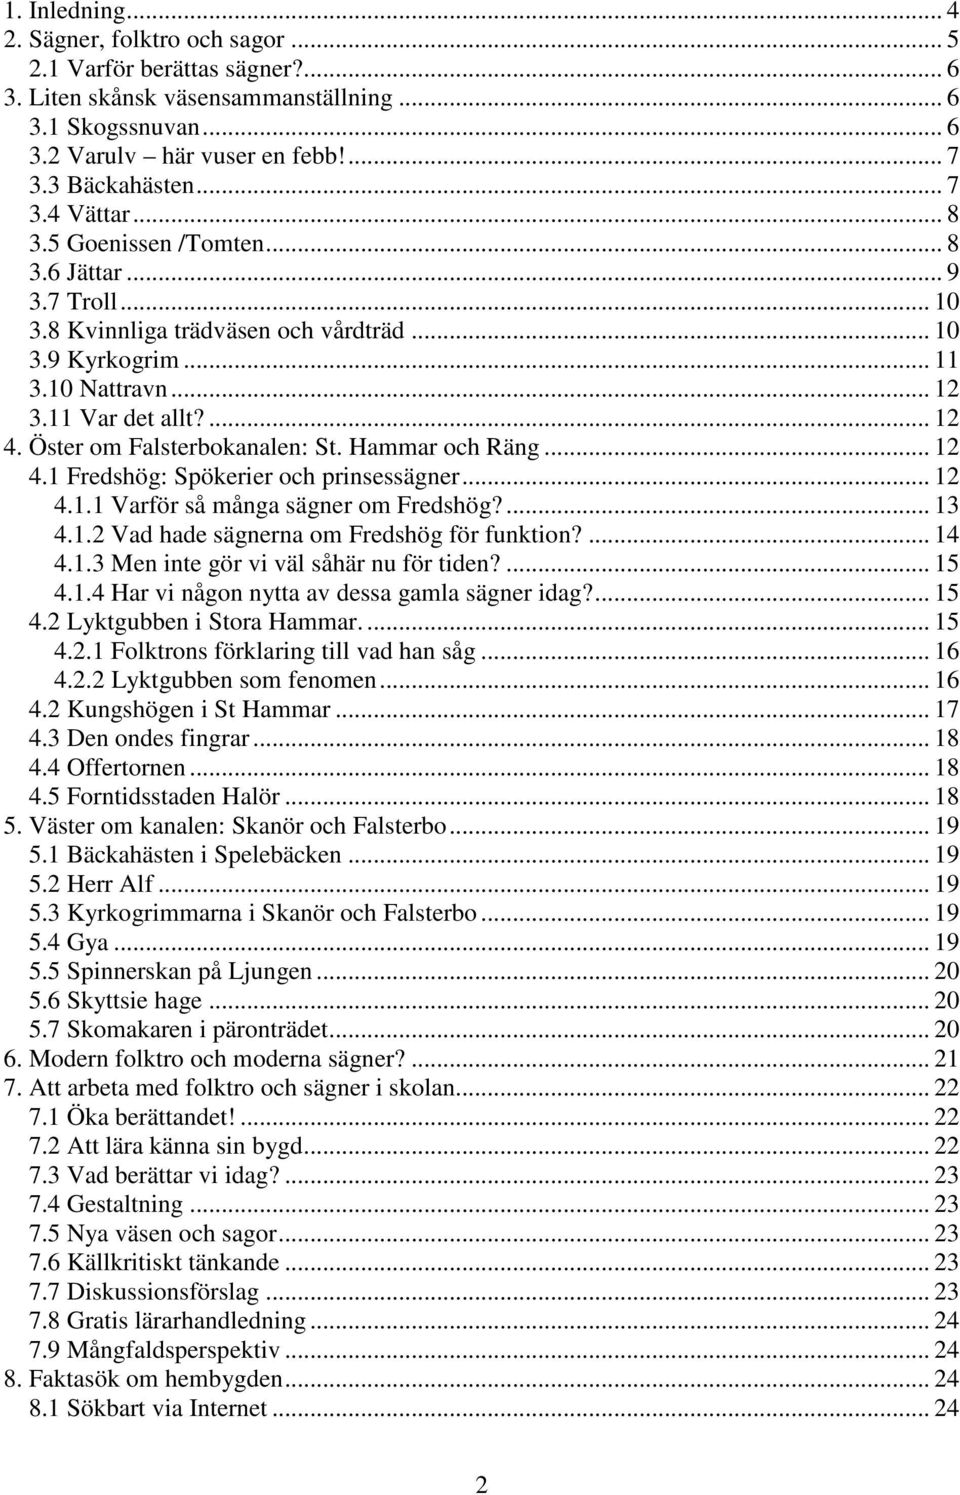 Öster om Falsterbokanalen: St. Hammar och Räng... 12 4.1 Fredshög: Spökerier och prinsessägner... 12 4.1.1 Varför så många sägner om Fredshög?... 13 4.1.2 Vad hade sägnerna om Fredshög för funktion?